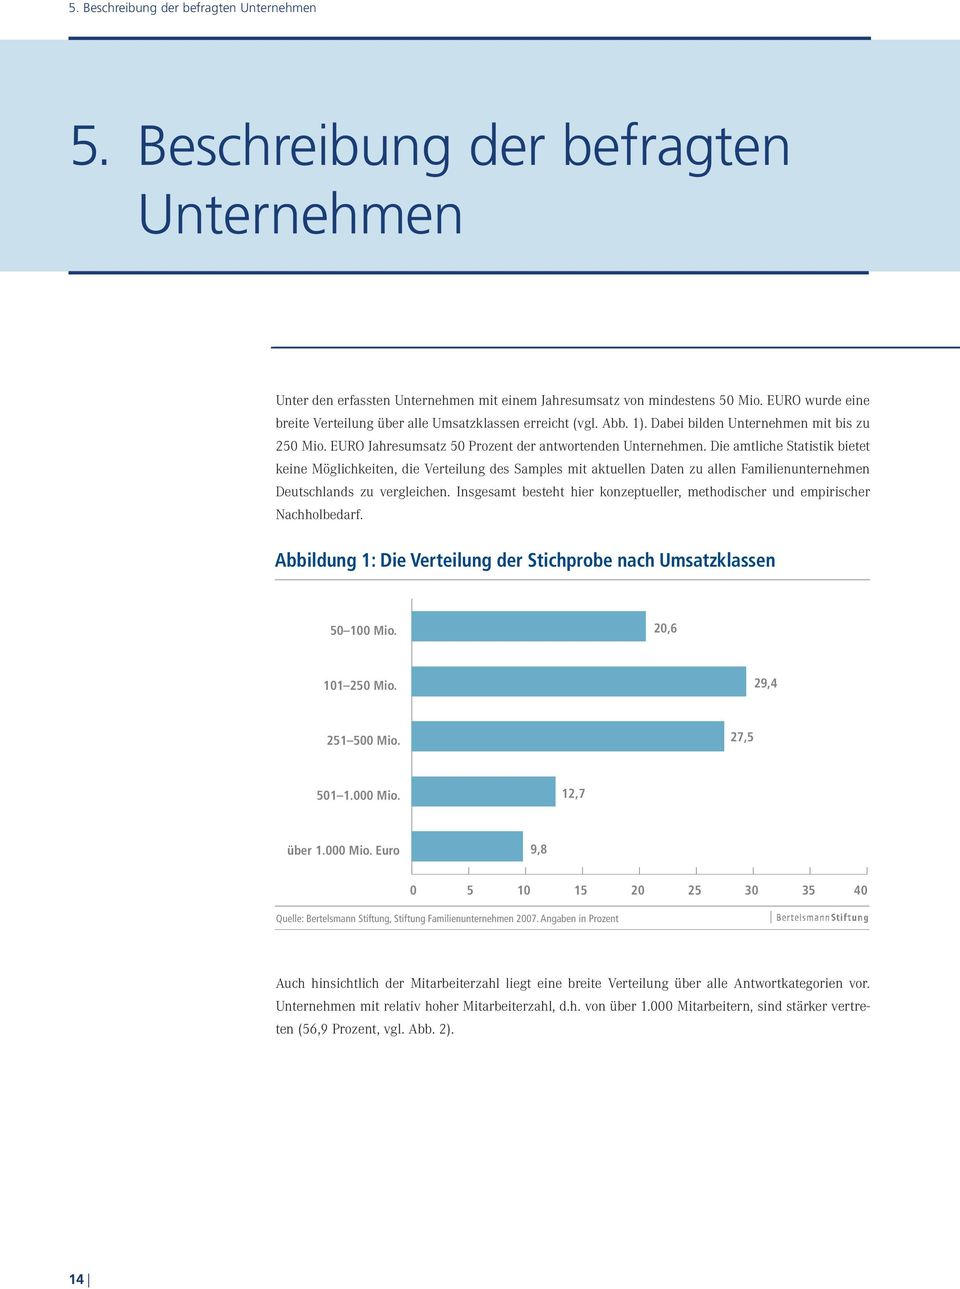 Die amtliche Statistik bietet keine Möglichkeiten, die Verteilung des Samples mit aktuellen Daten zu allen Familienunternehmen Deutschlands zu vergleichen.